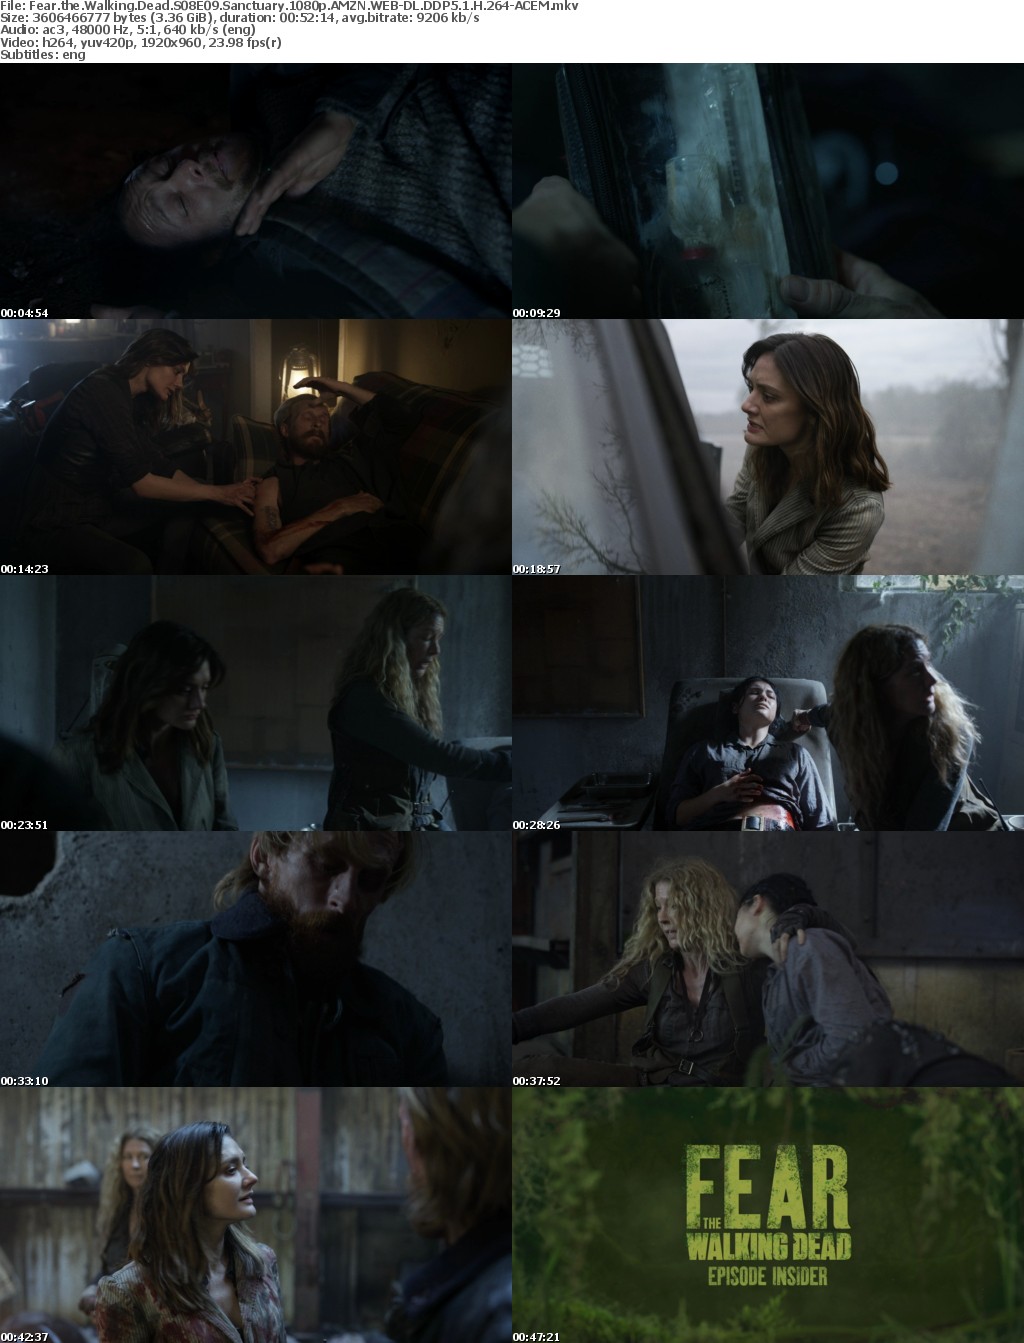 Fear the Walking Dead S08E09 Sanctuary 1080p AMZN WEB-DL DDP5 1 H 264-ACEM